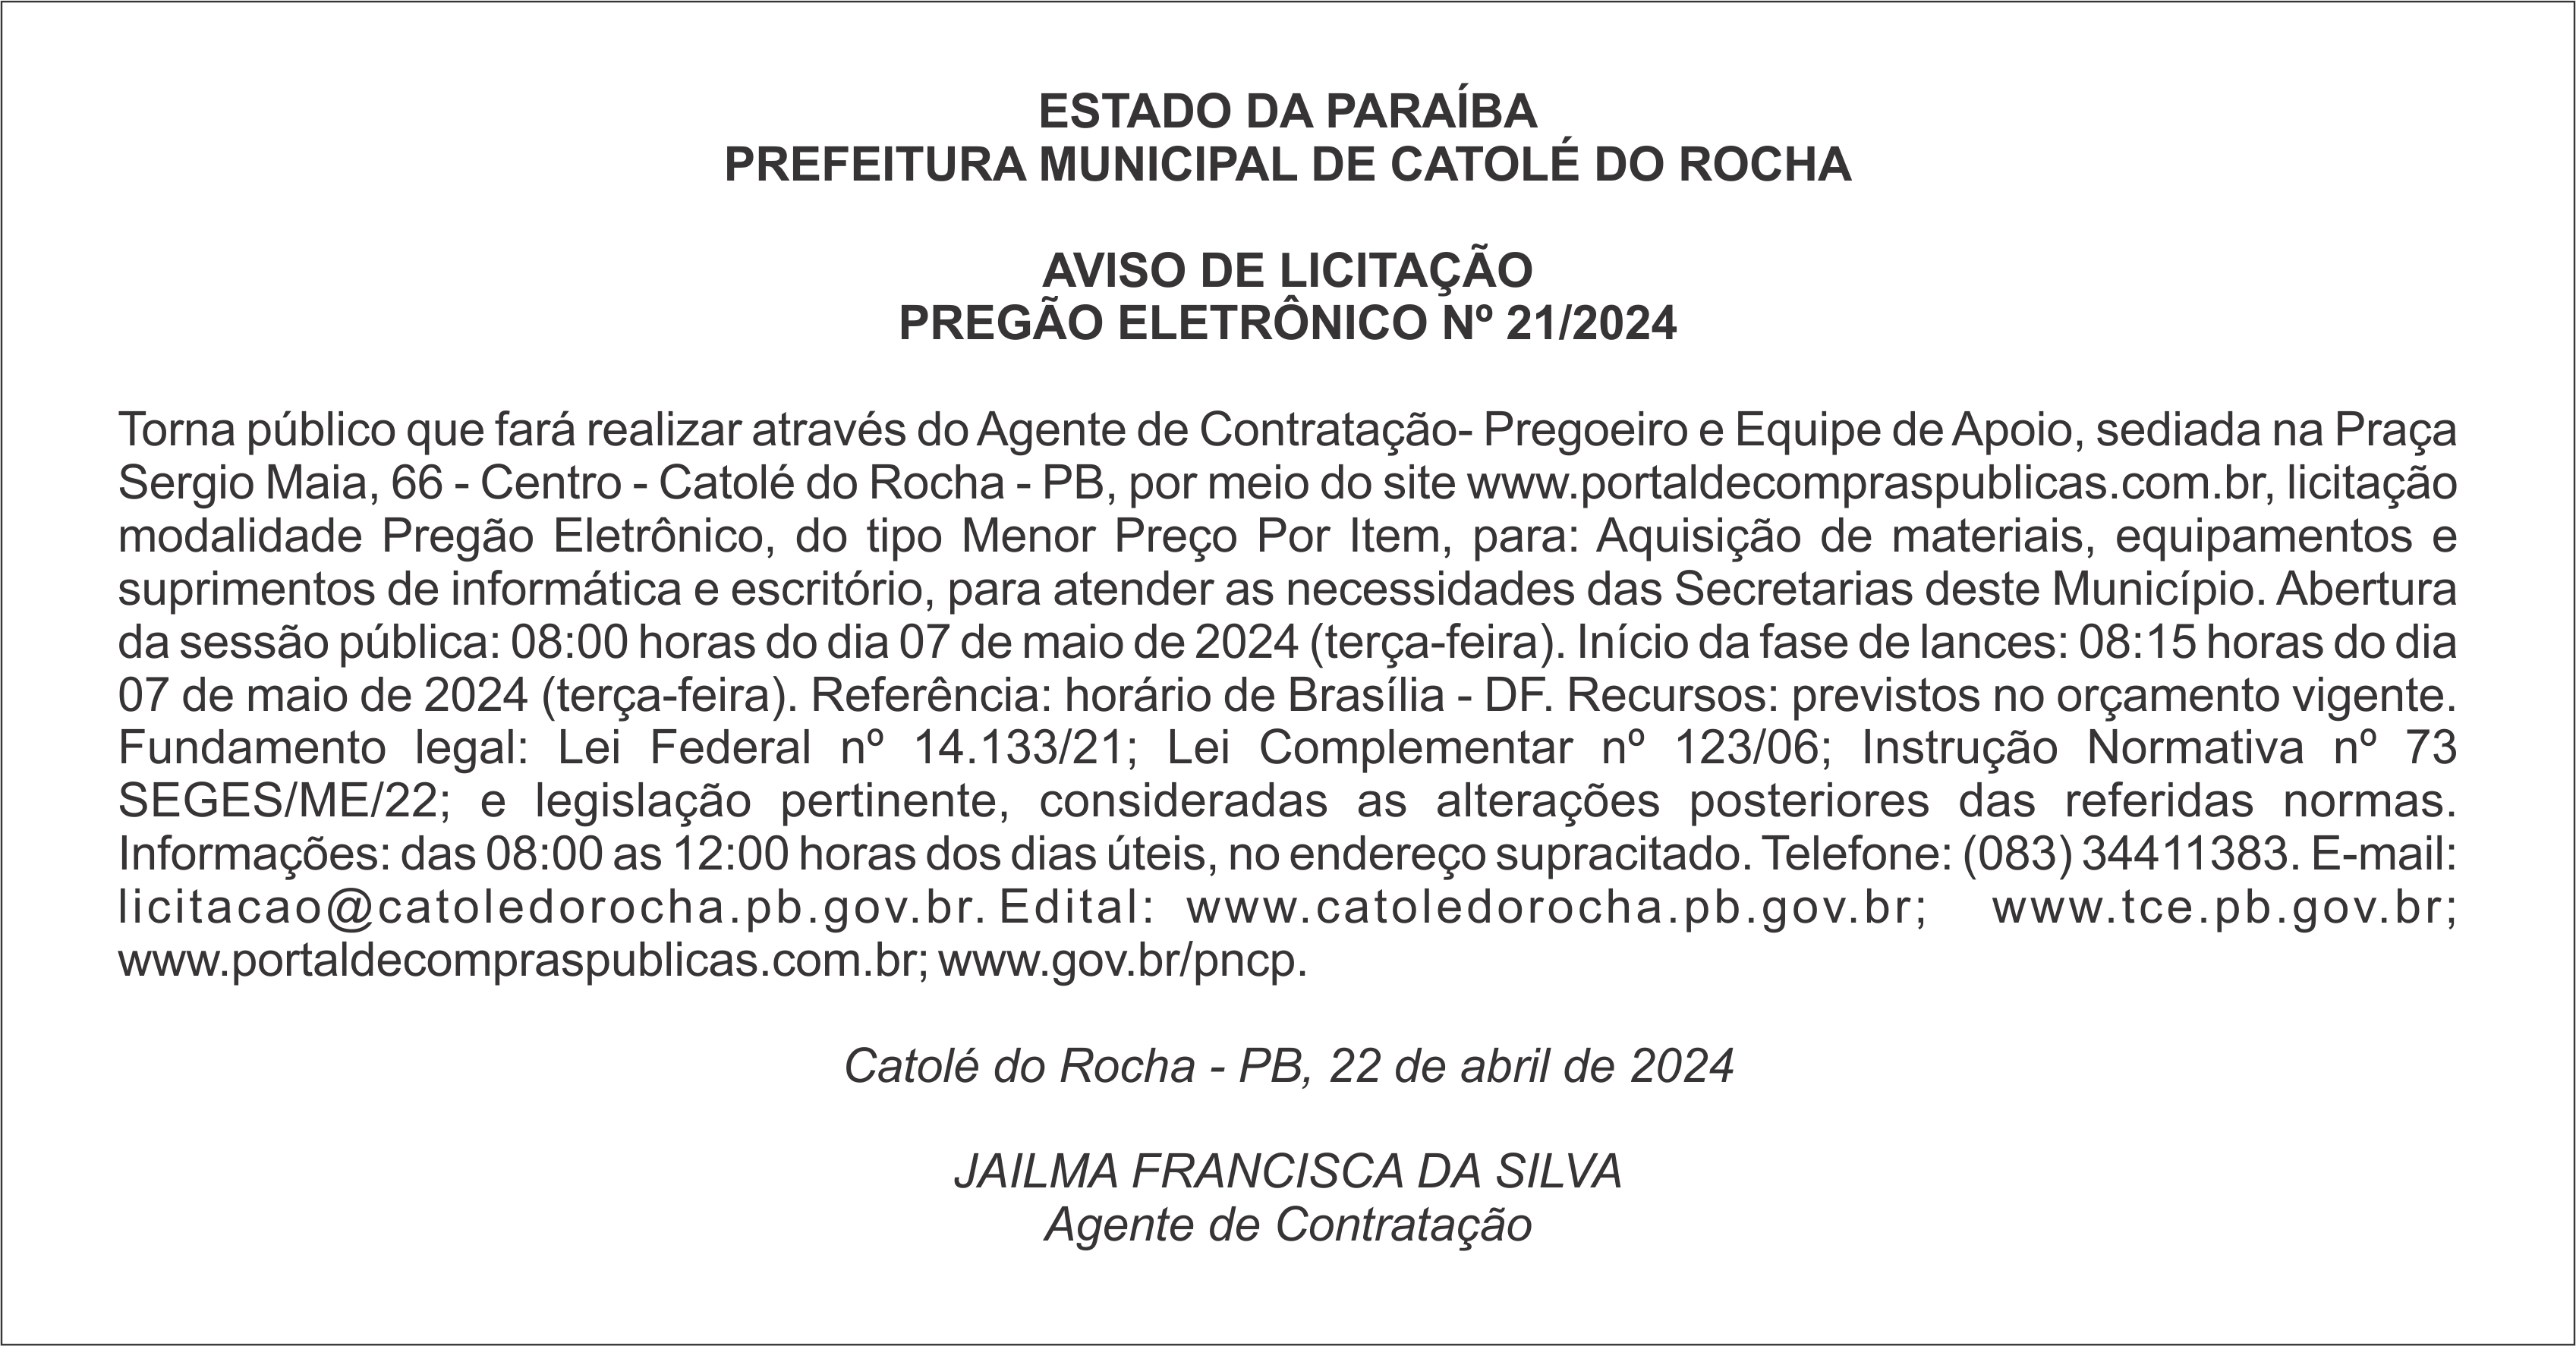 PREFEITURA MUNICIPAL DE CATOLÉ DO ROCHA – AVISO DE LICITAÇÃO – PREGÃO ELETRÔNICO Nº 21/2024